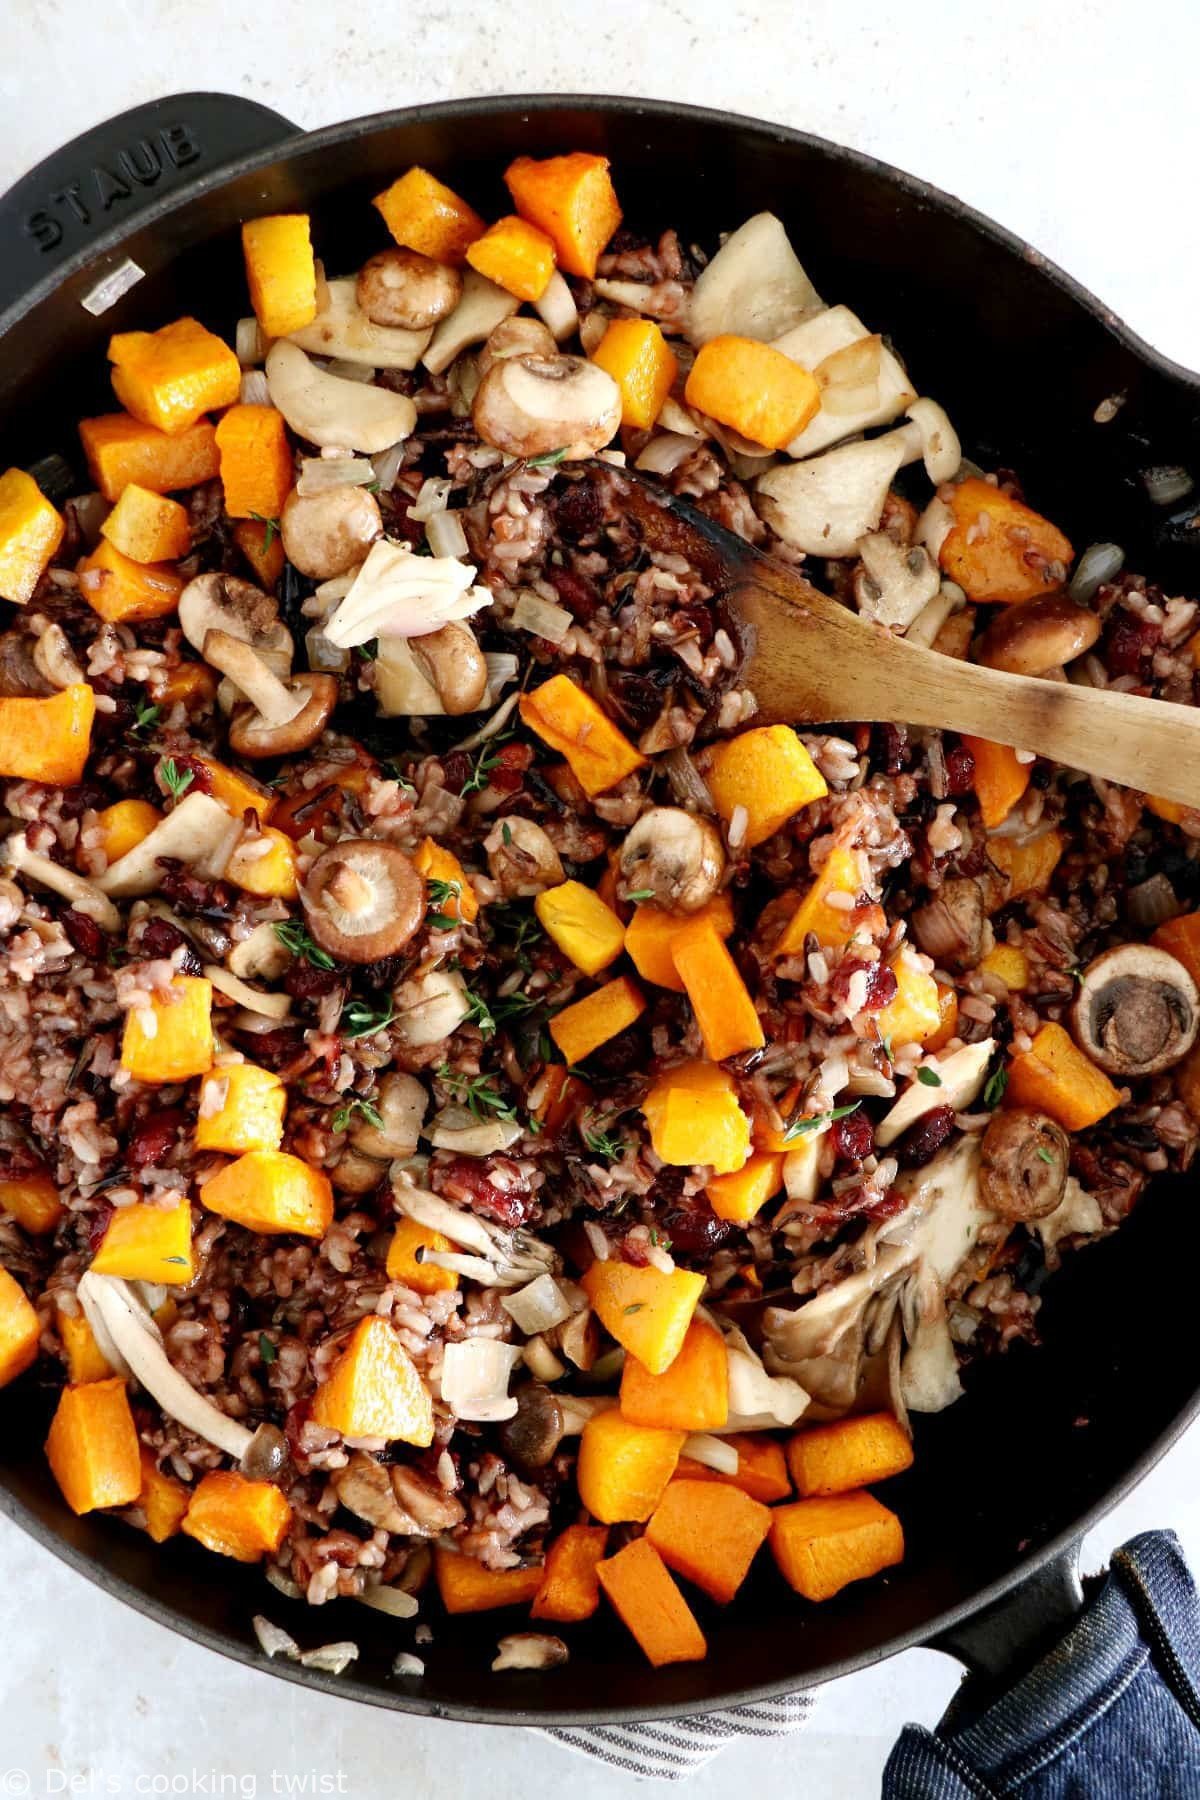 Le riz sauvage à la courge butternut et aux champignons, c’est un plat familial qui convient aussi bien en accompagnement qu’en plat unique végétarien.